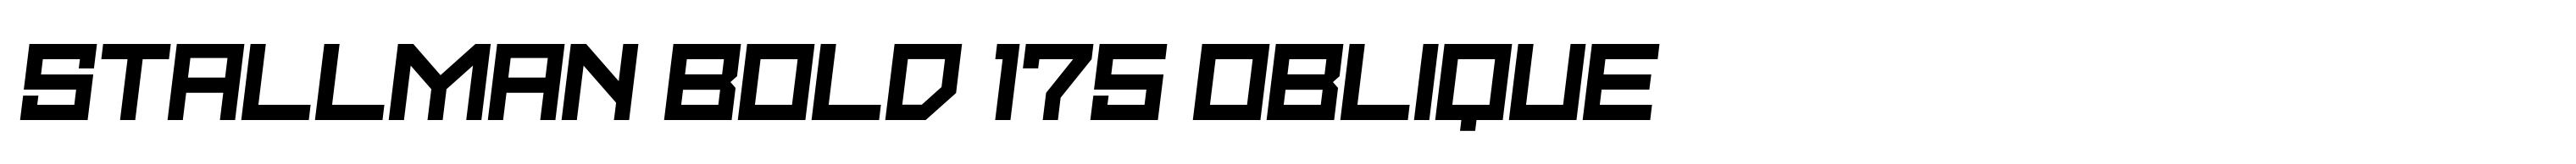 Stallman Bold 175 Oblique